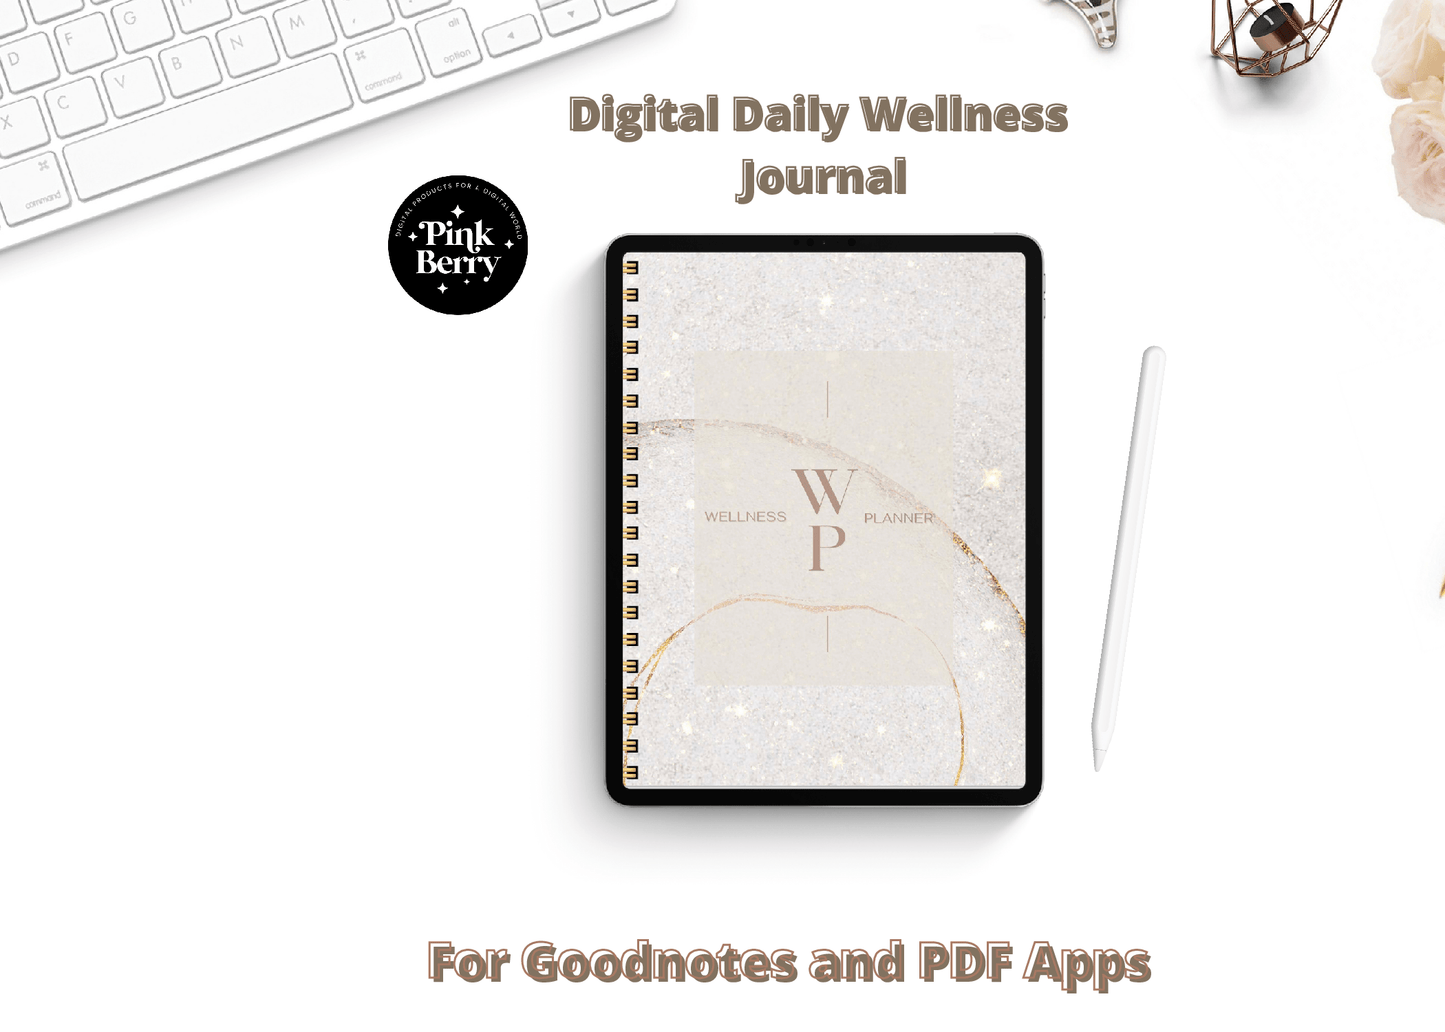 Wellness journal digital, Mindfulness journal, Goodnotes Journal, Self care workbook, Mental health templates, Positivity planner